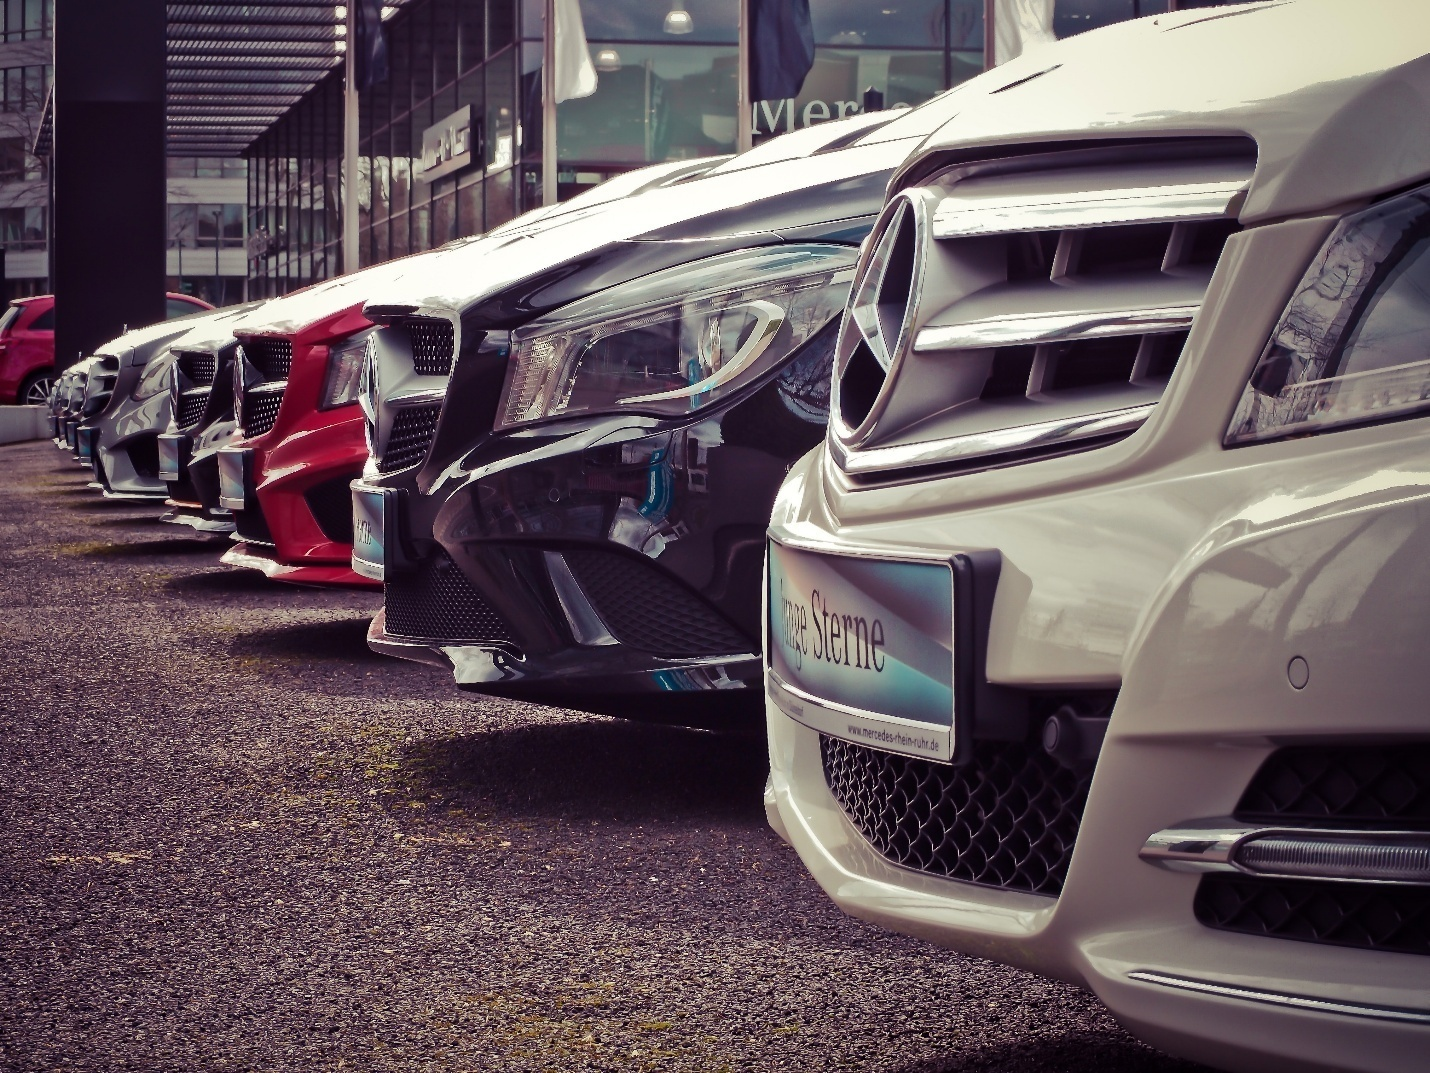 Several Mercedes Bens parked together